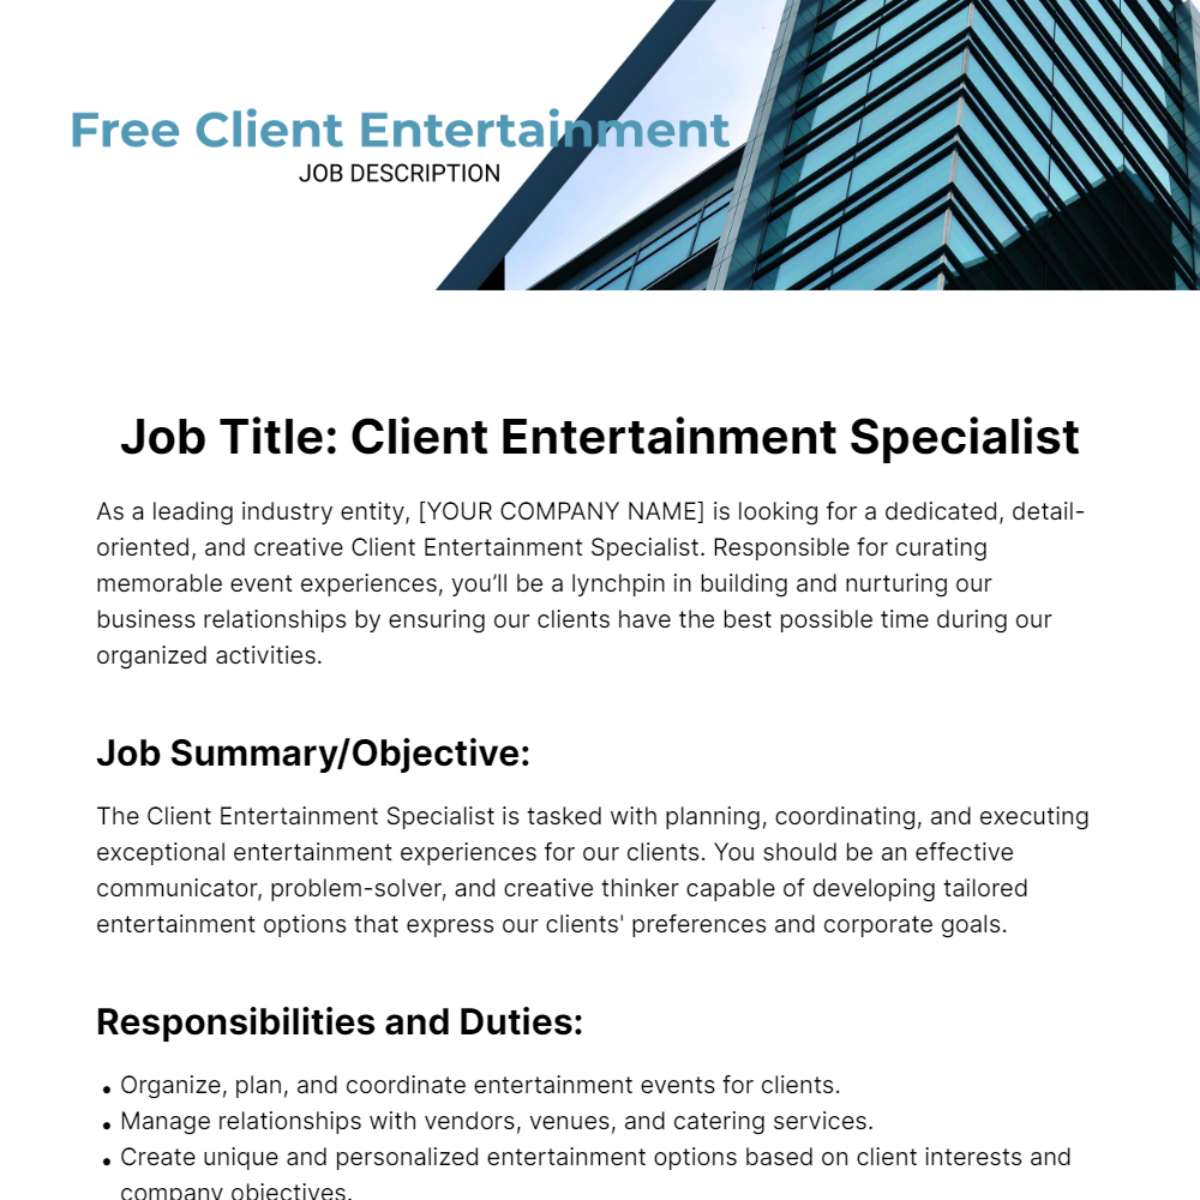 Free Client Entertainment Job Description Template